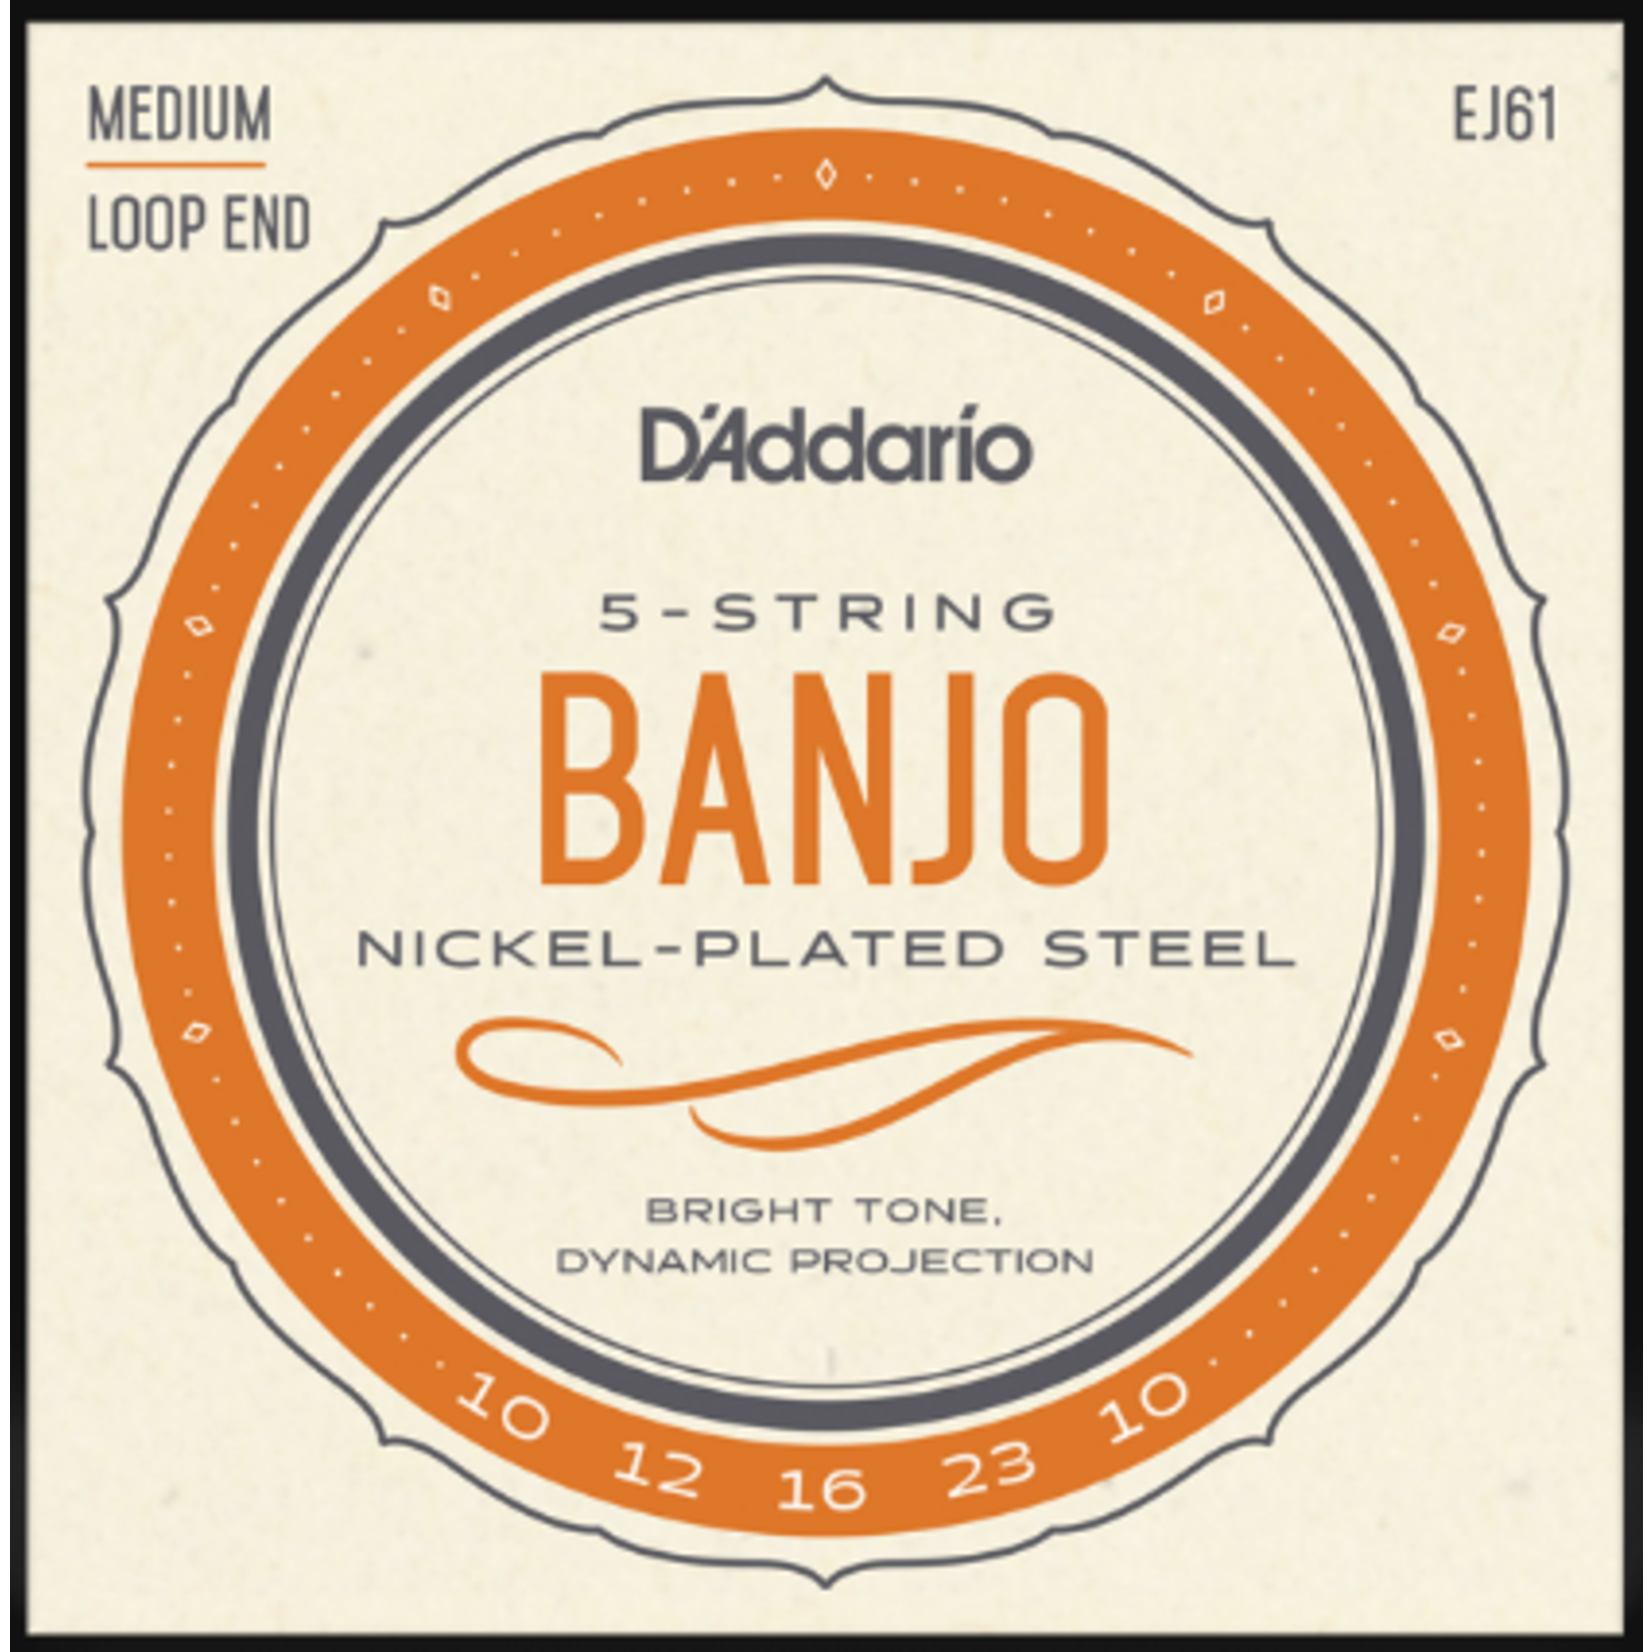 D'Addario EJ61 Medium Loop End Banjo 5-String Banjo Strings 10-23